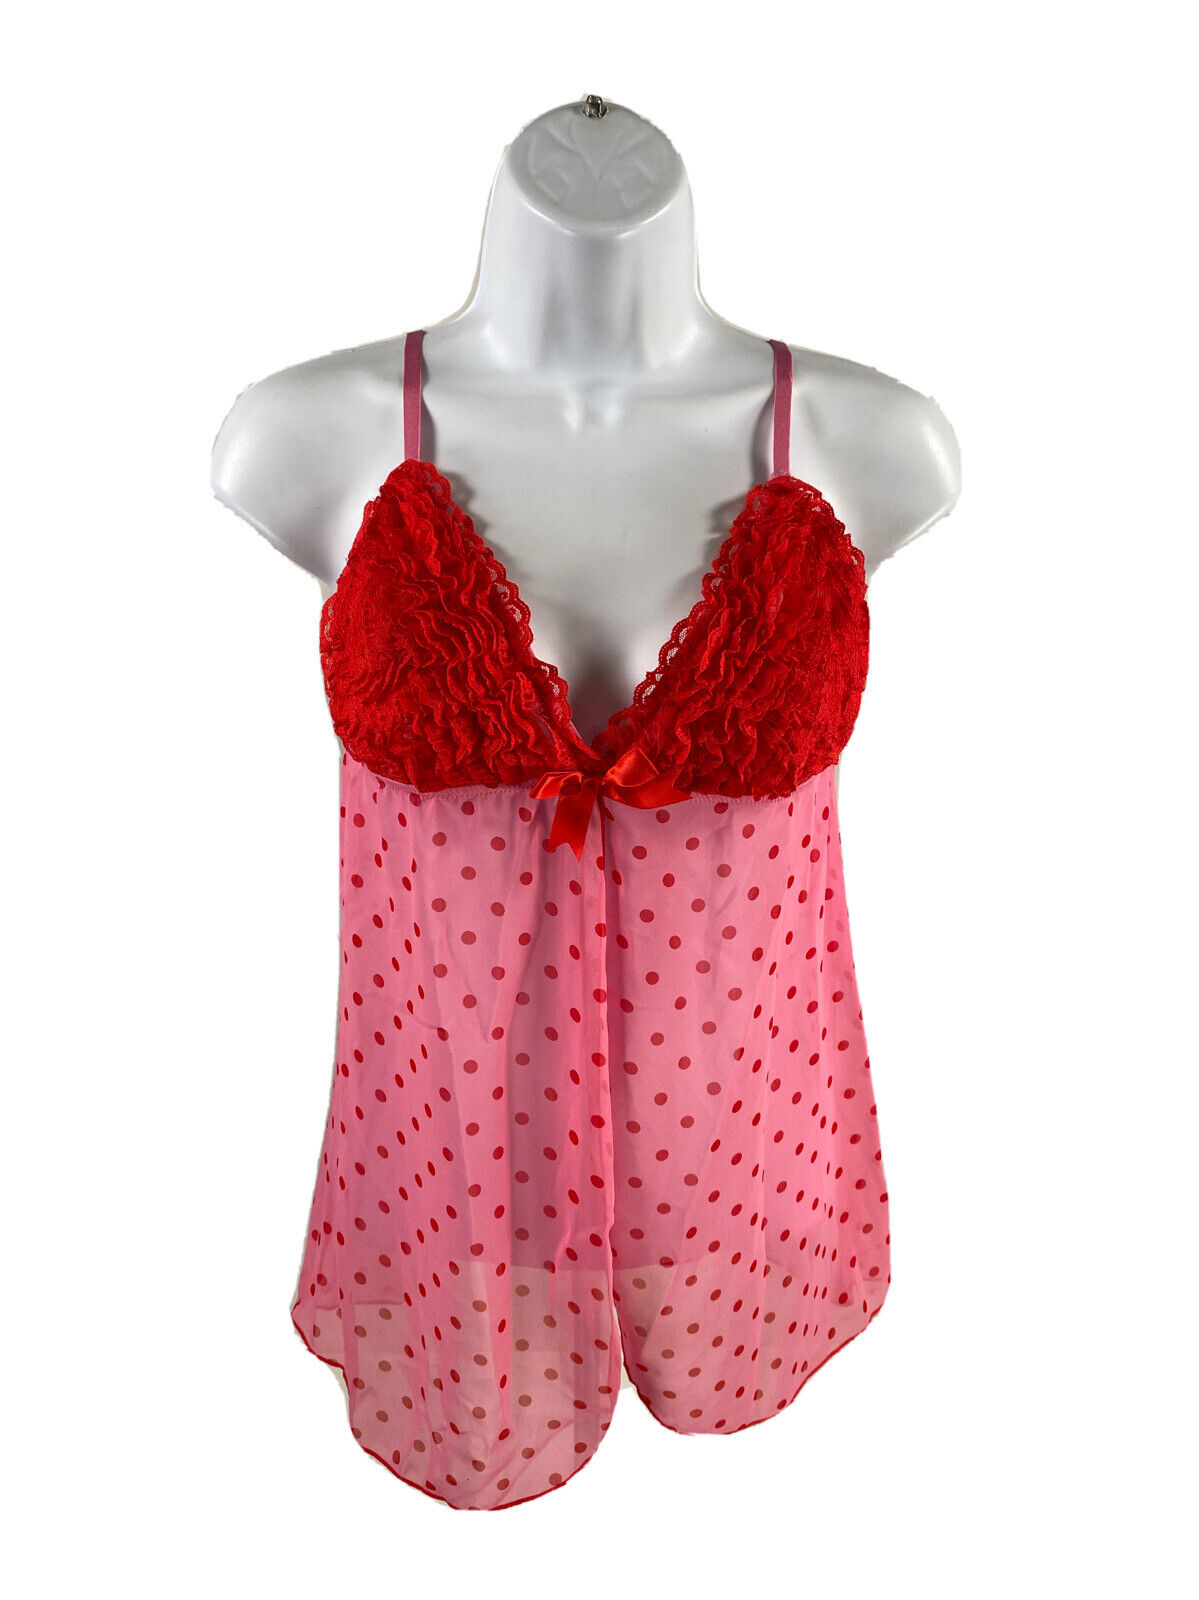 NUEVO Babydoll rosa/rojo para mujer Sexy Little Things de Victoria's Secret - 36B